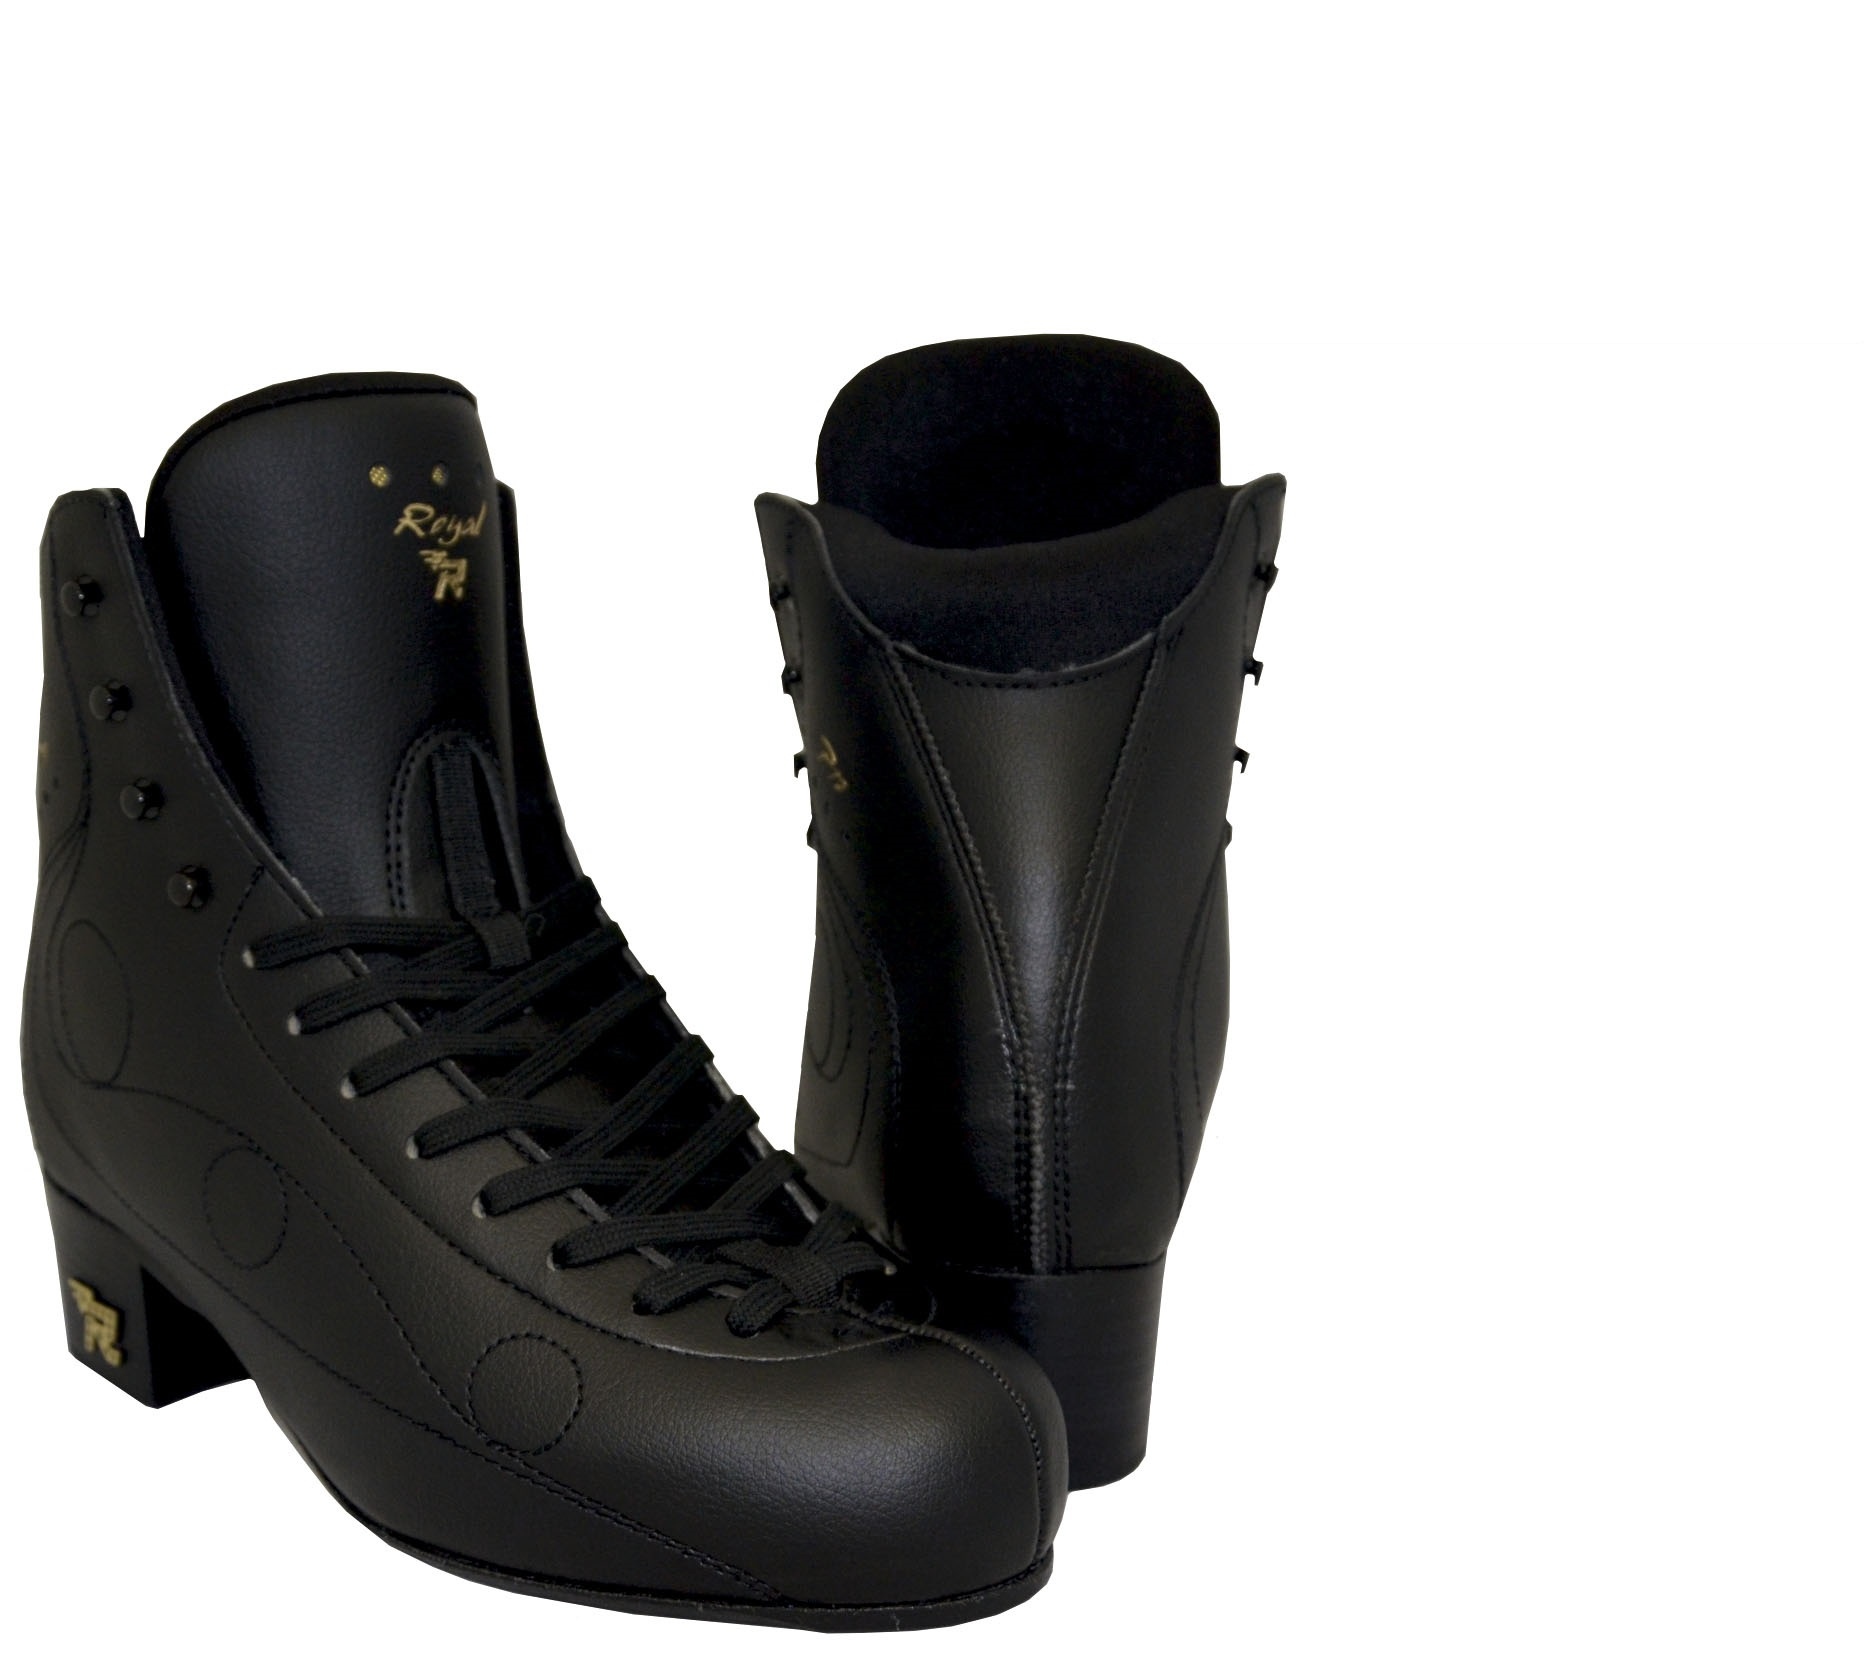 Ботинки Risport Royal Pro (Черные) от интернет магазина ТДФК-ЮГ-ТВИЗЛ